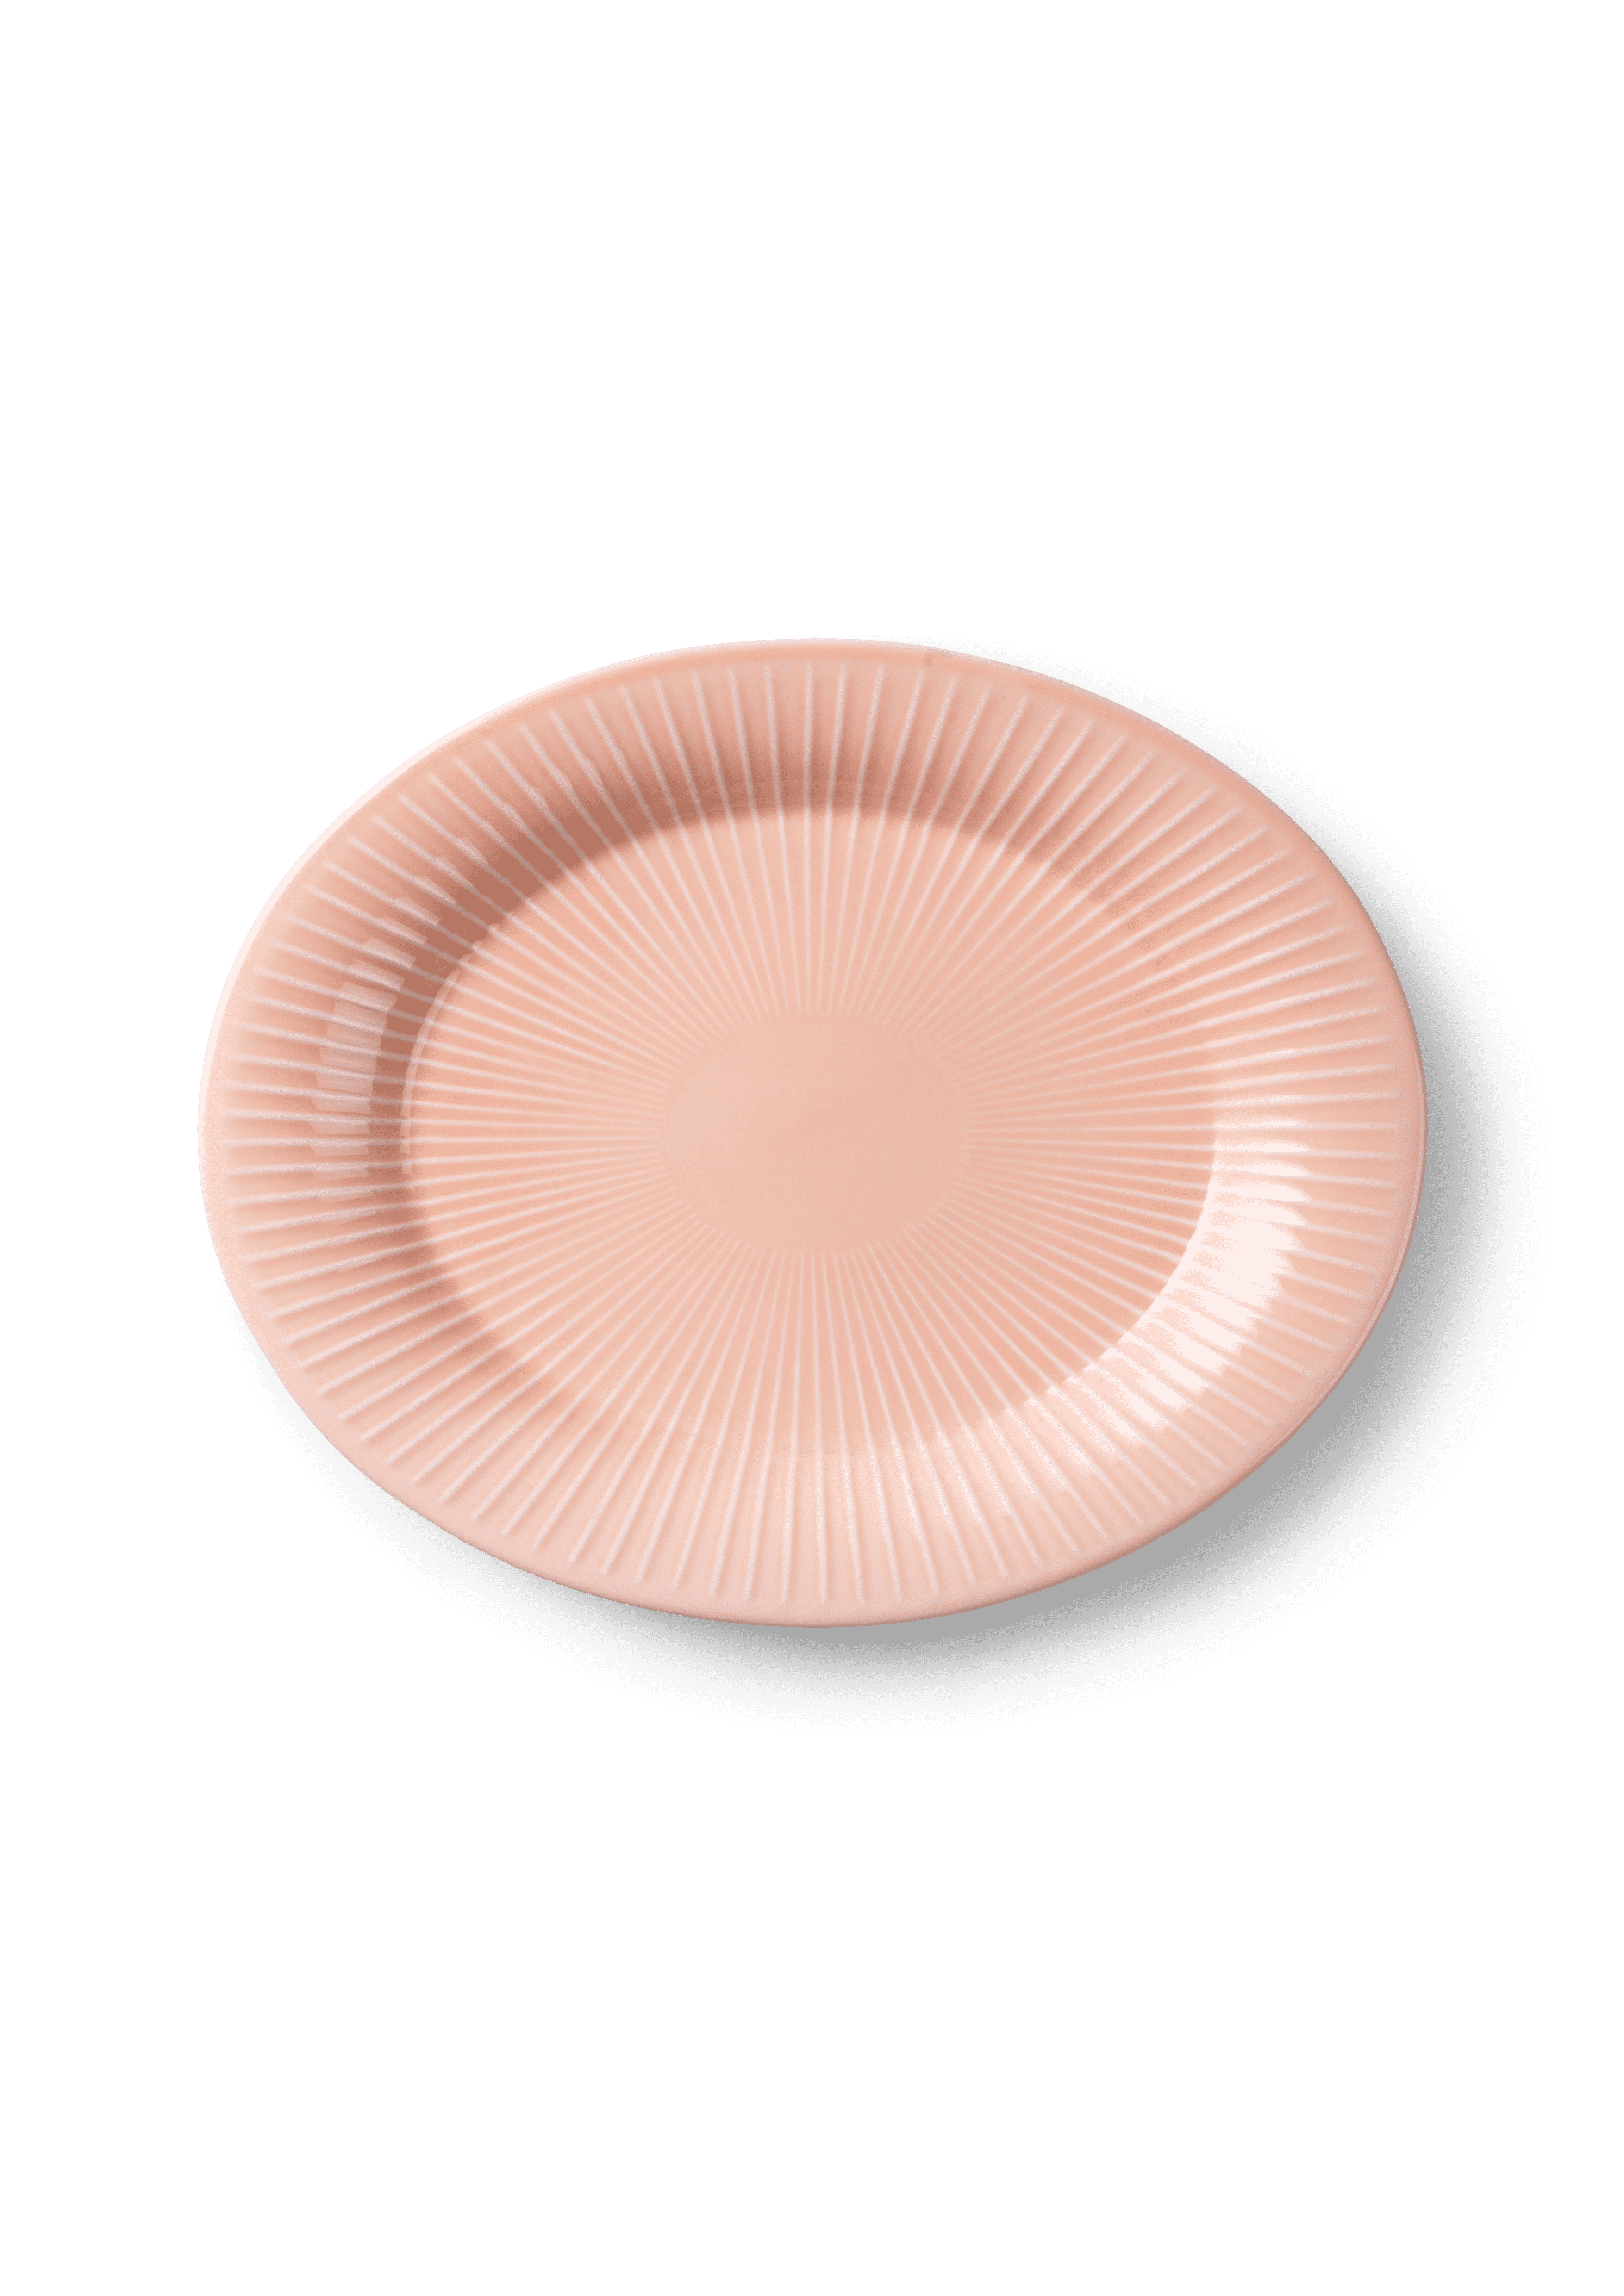 Oval dish 28.5x22.5 cm